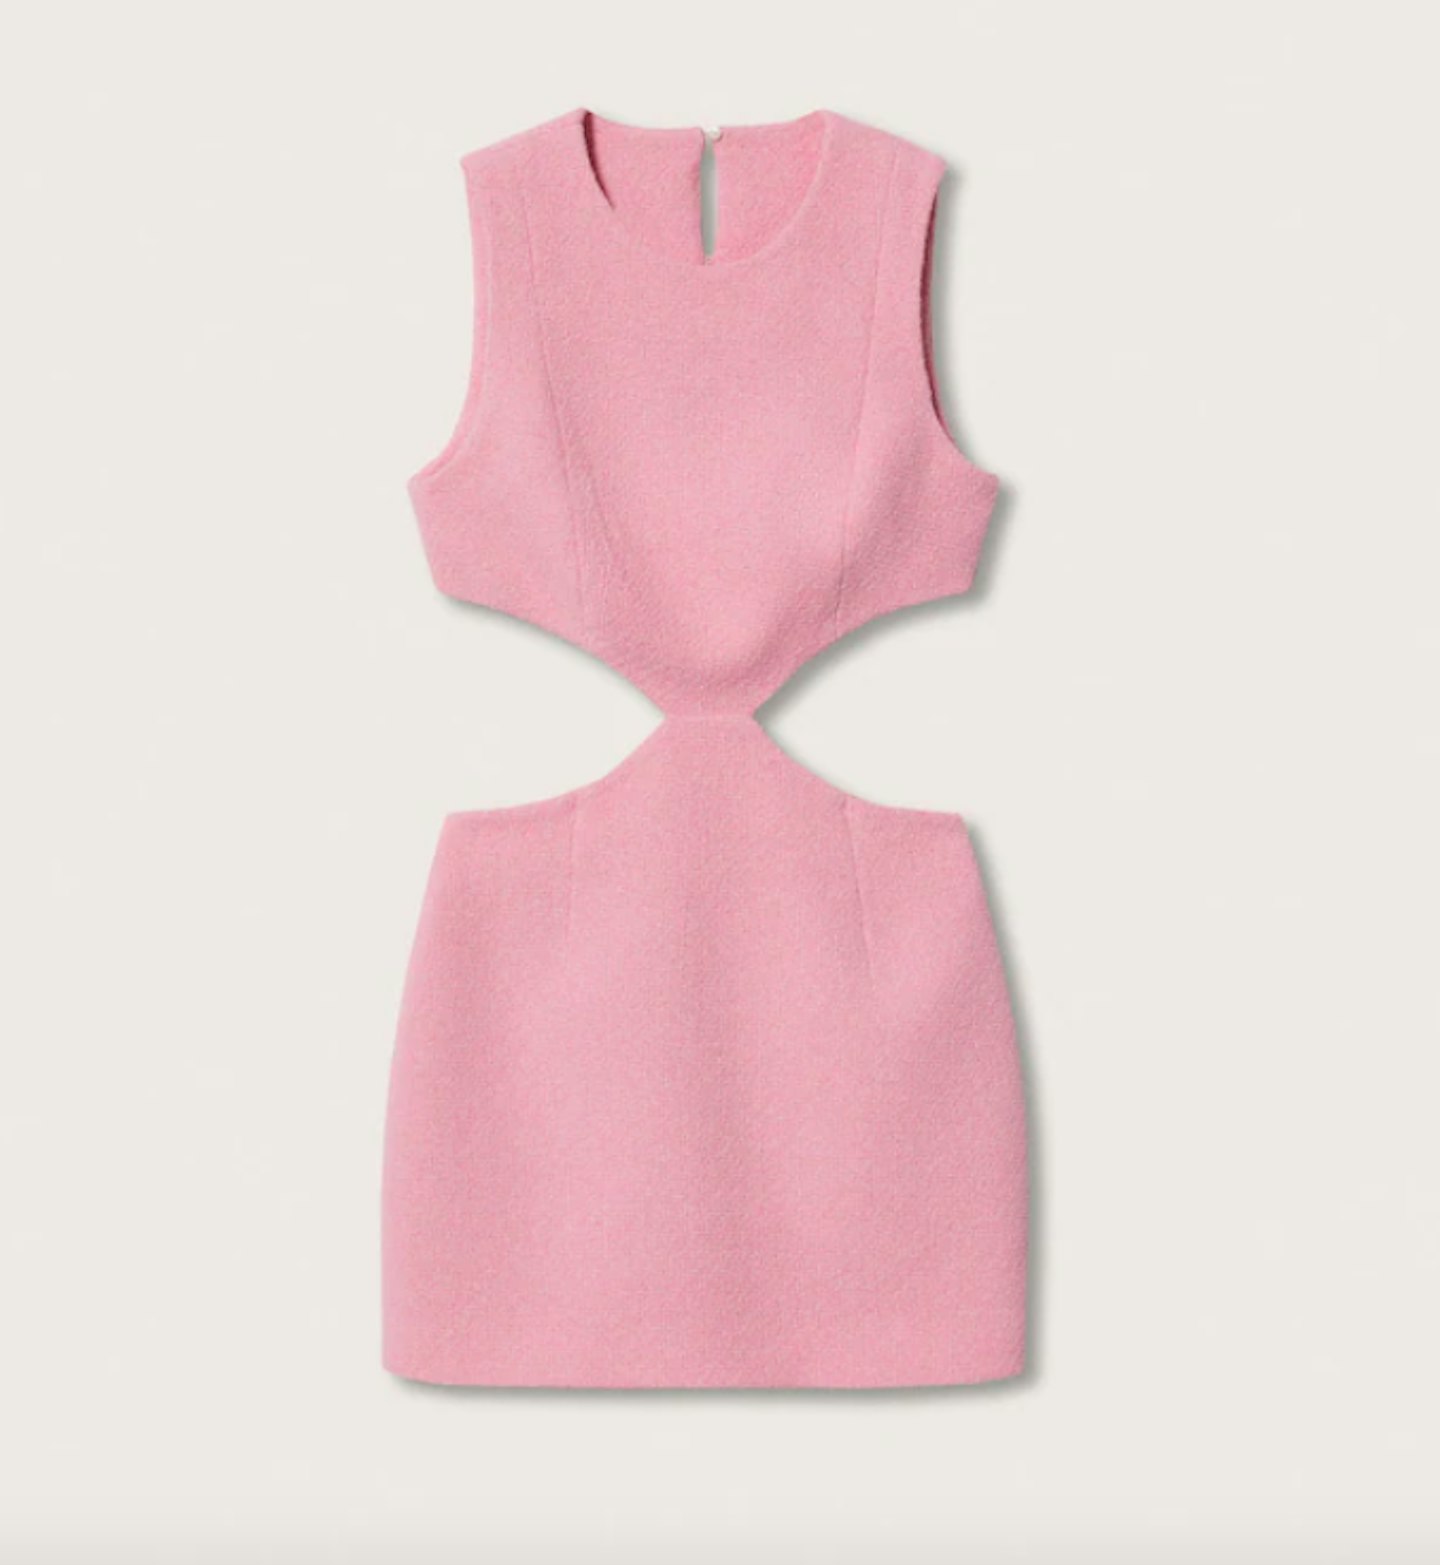 Vent Cotton Dress, £69.99